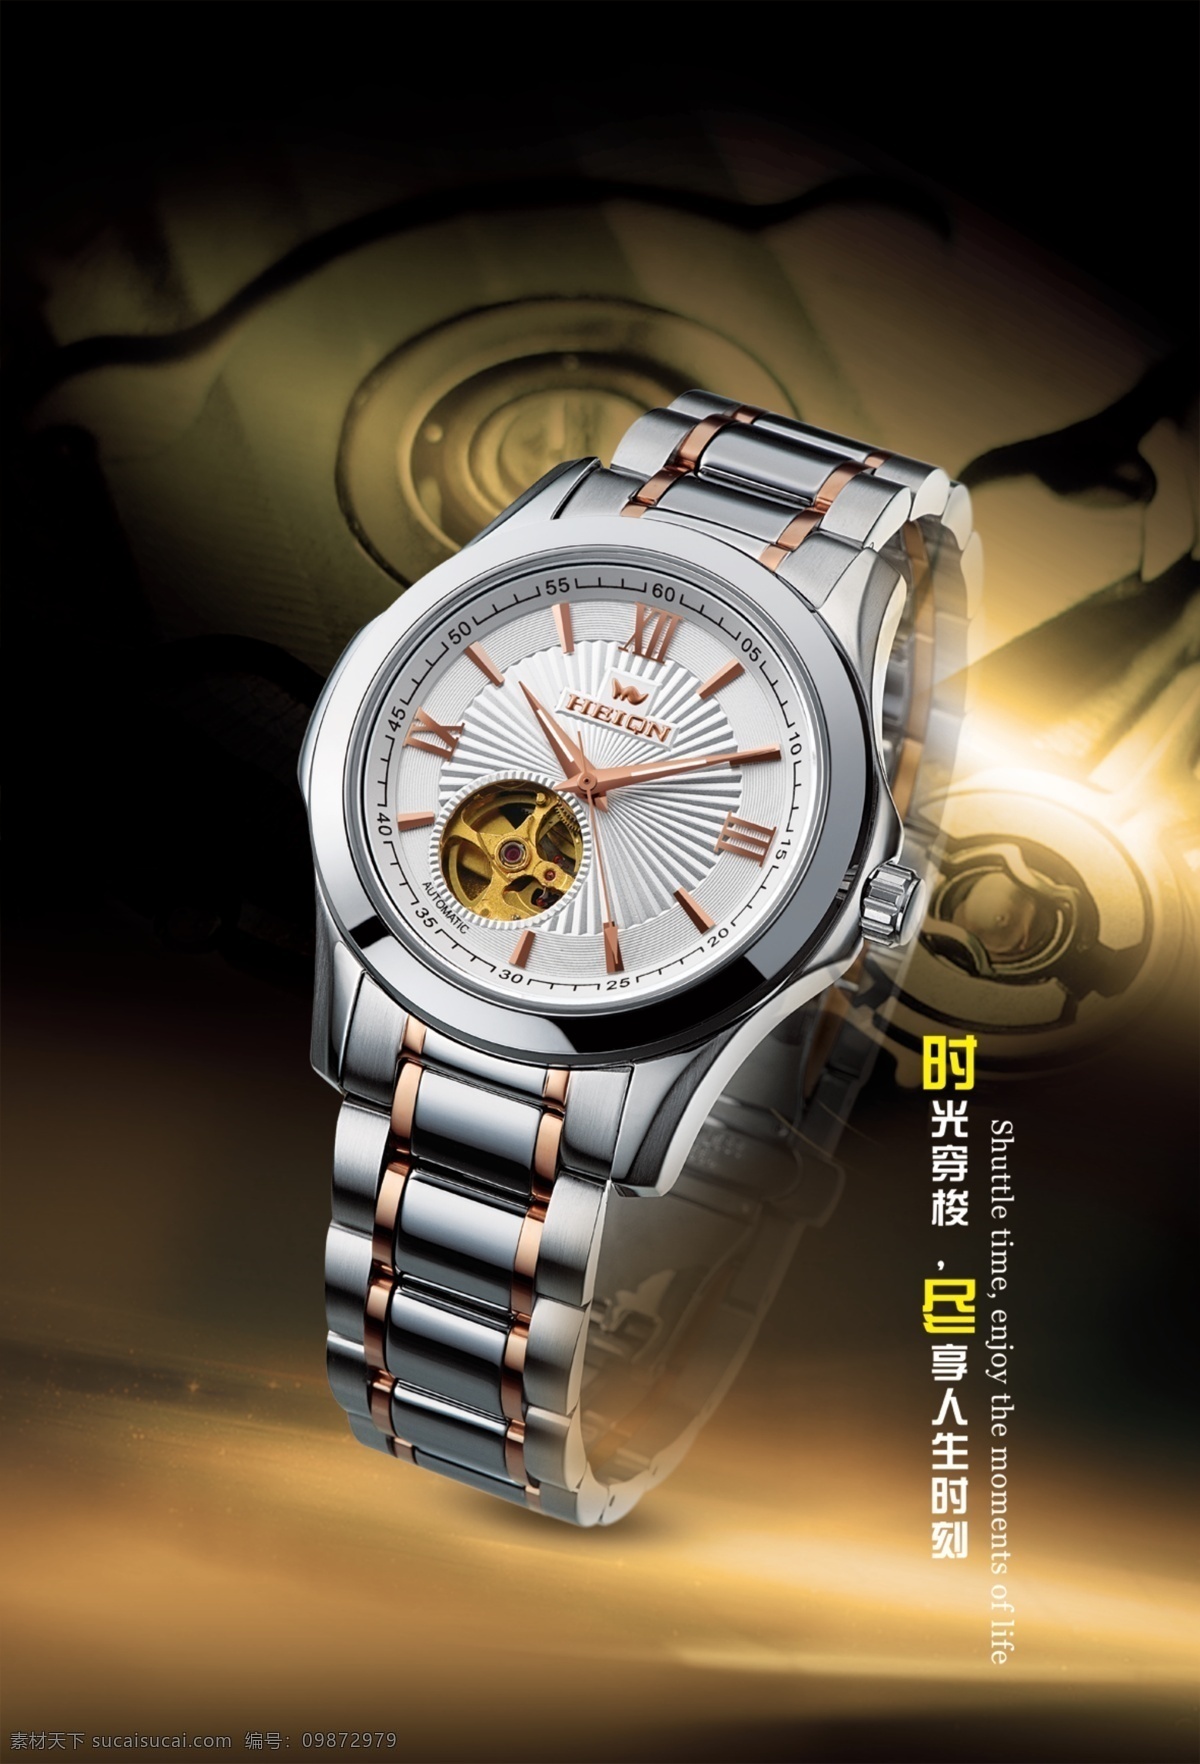 手表素材 高端商业 海报设计素材 海报设计图 海报设计图片 手表 手表背景 手表广告 手表海报 高端手表 高档手表 psd源文件